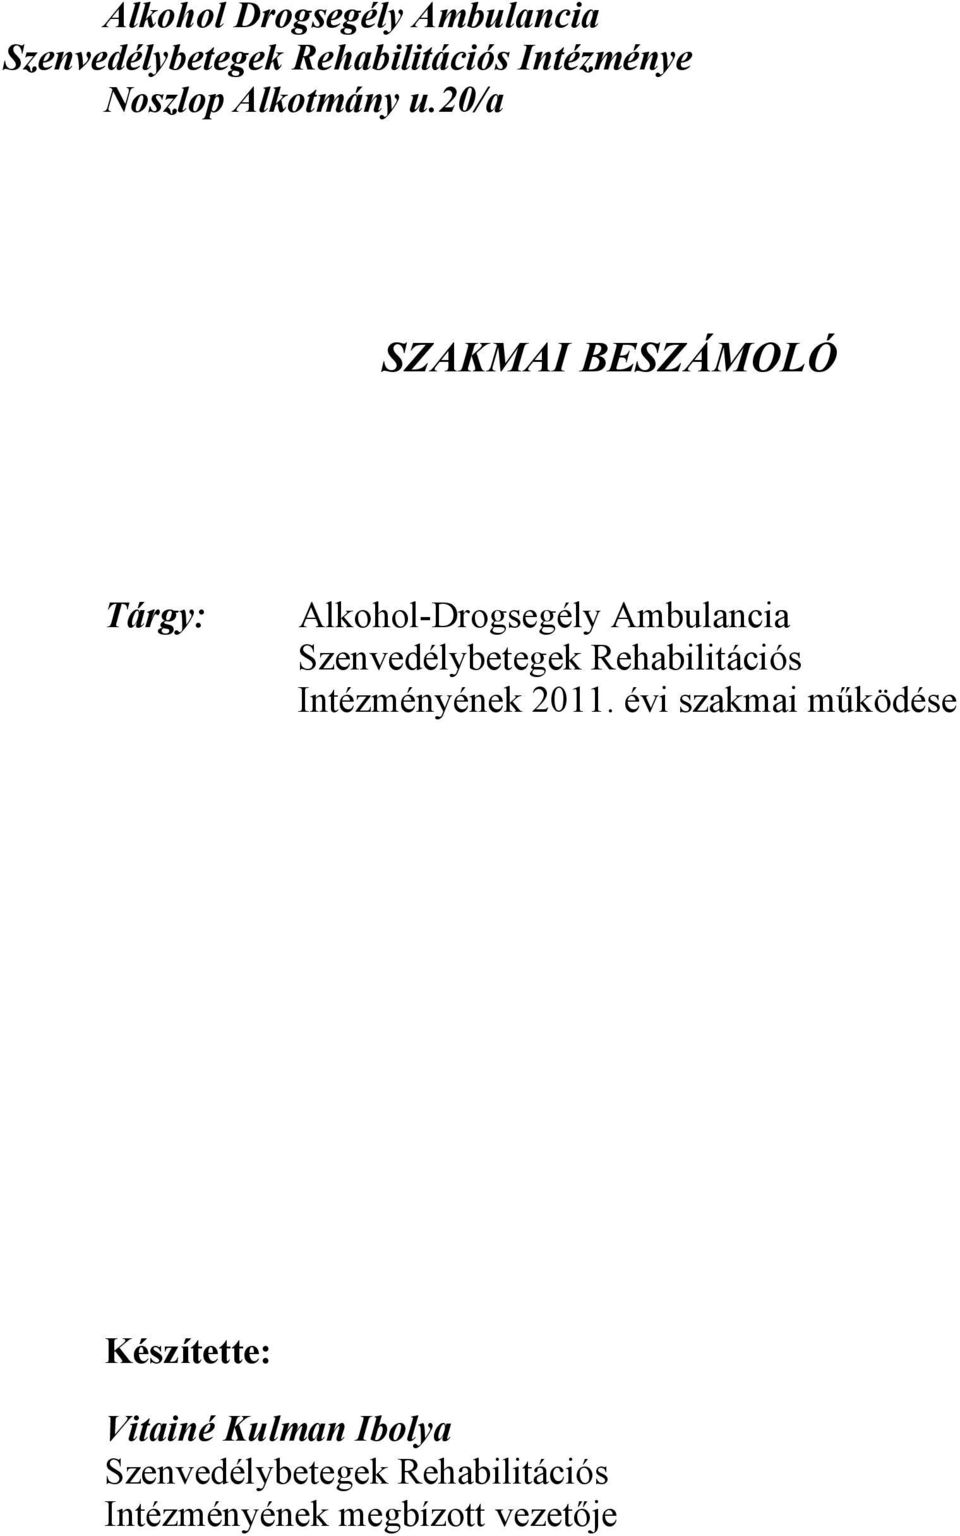 20/a SZAKMAI BESZÁMOLÓ Tárgy: Alkohol-Drogsegély Ambulancia Szenvedélybetegek